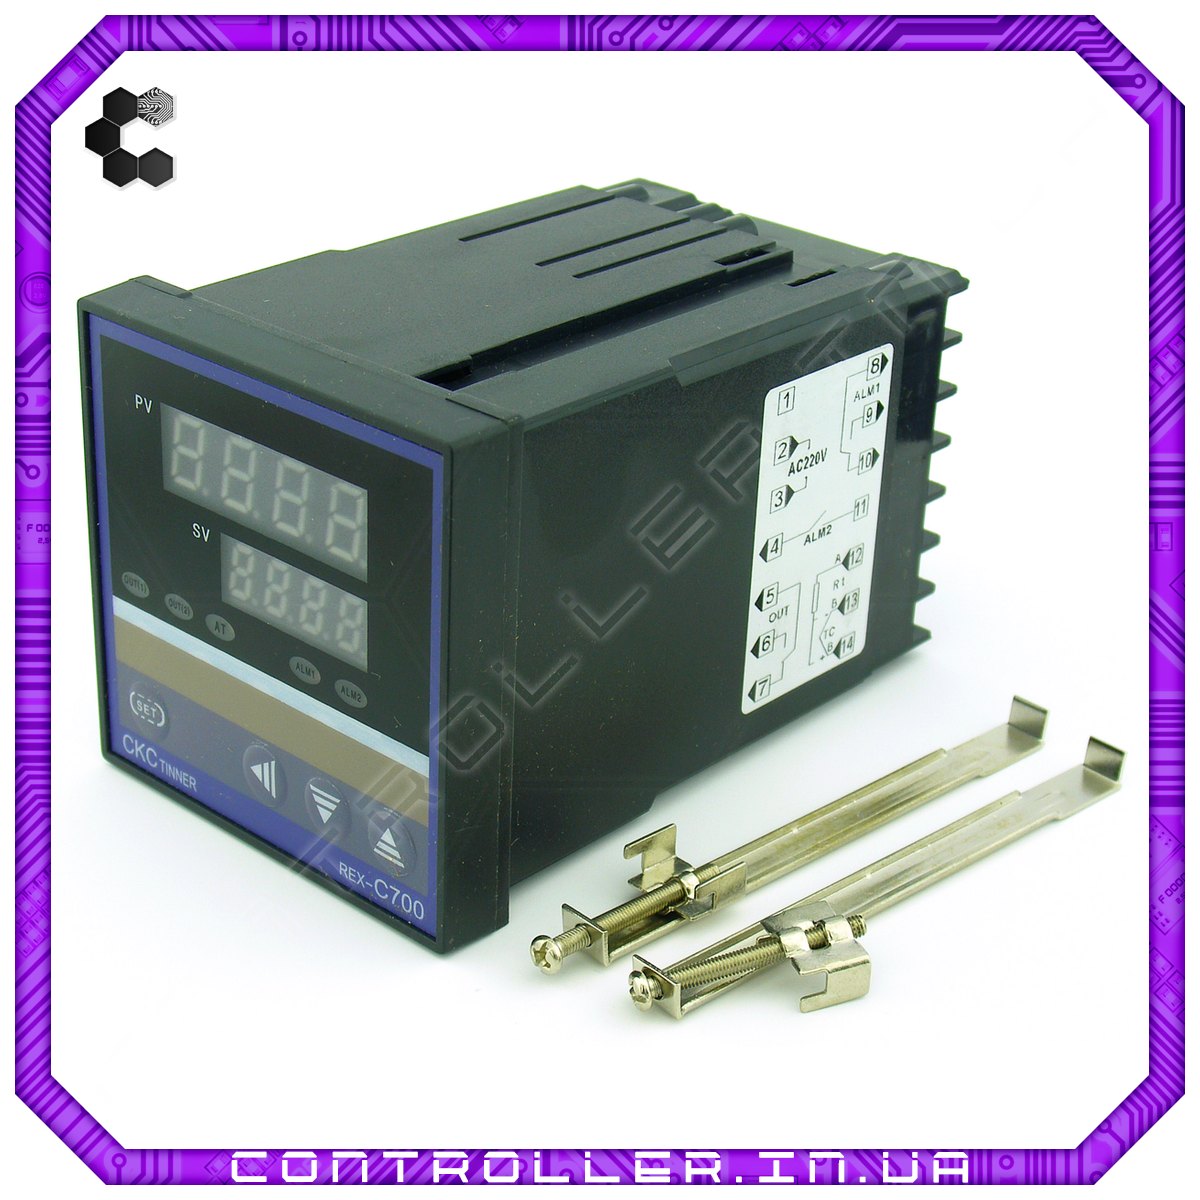 Контролер температури REX-C700 0-400°З контакт реле